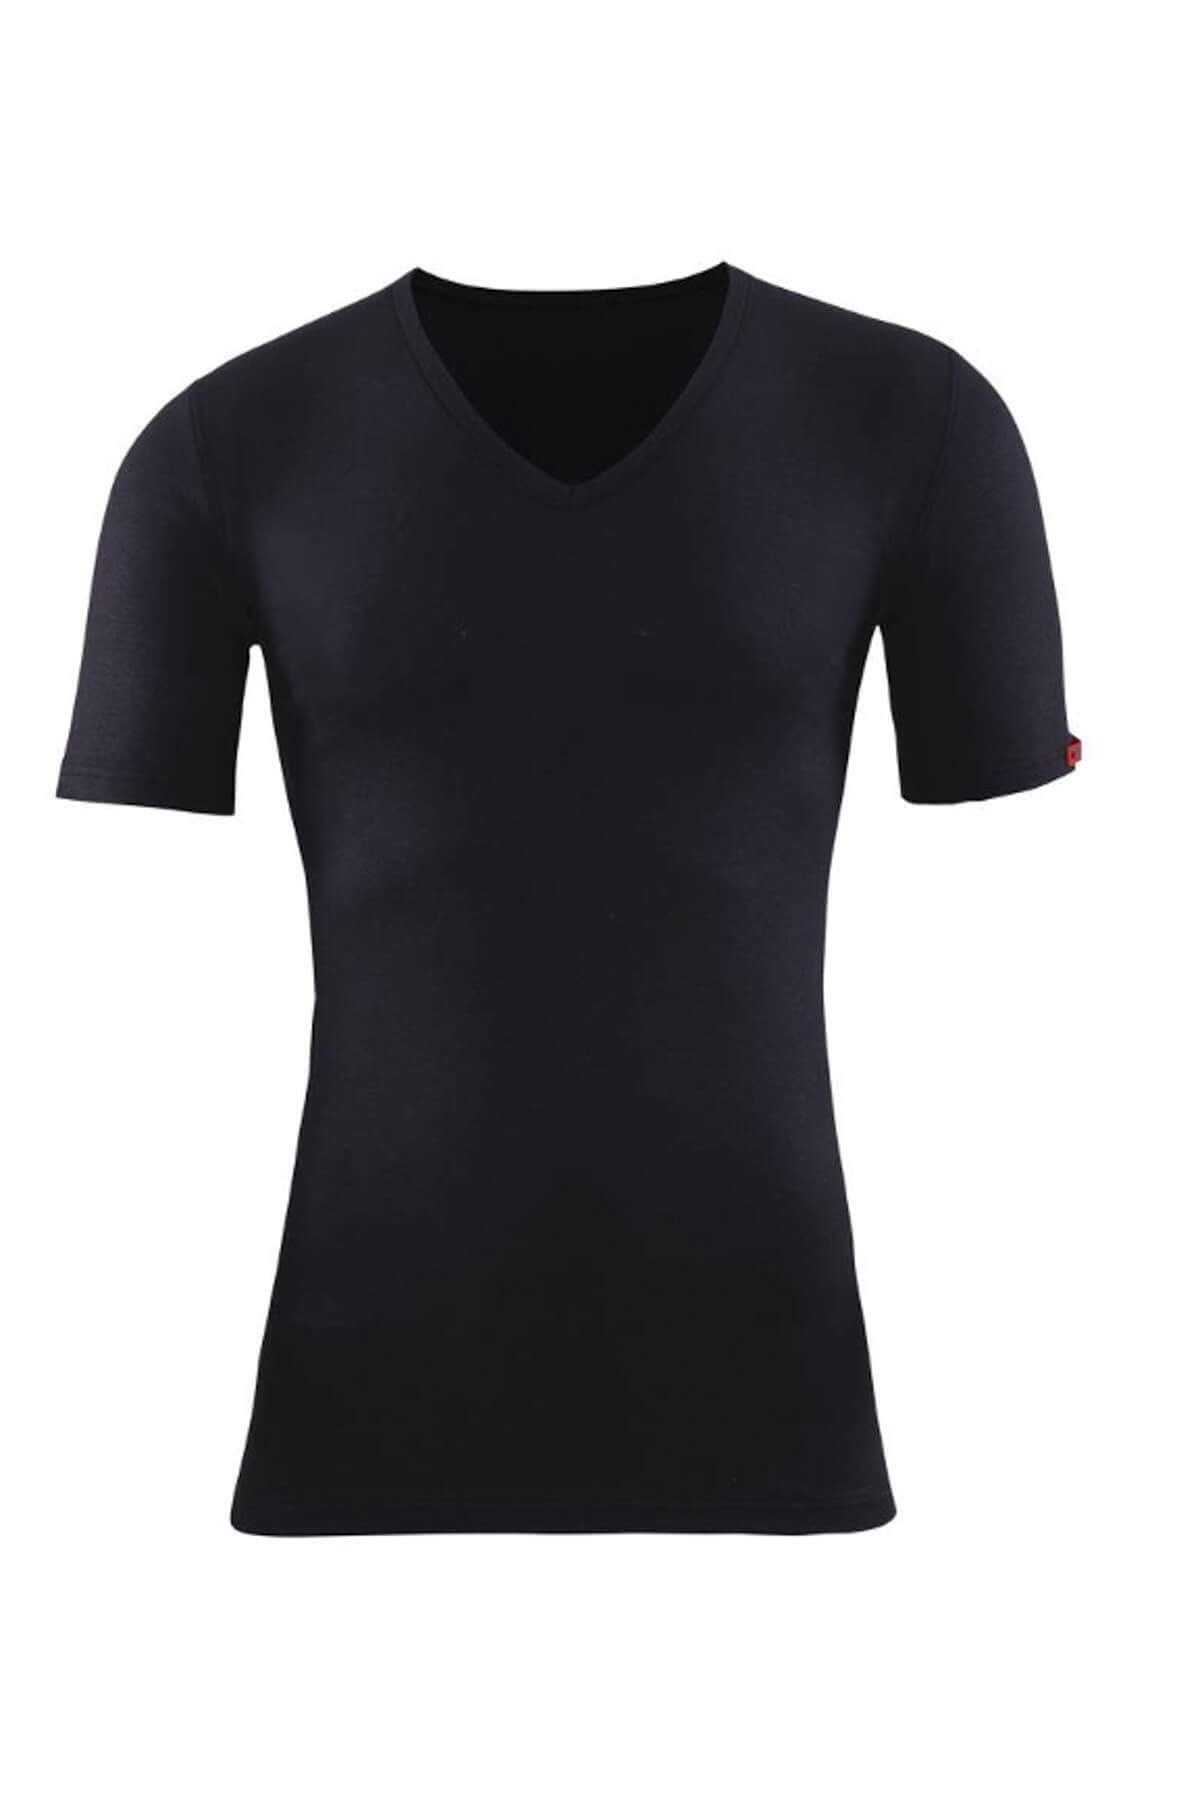 Blackspade Erkek Siyah 2. Seviye Termal  T-Shirt 1263